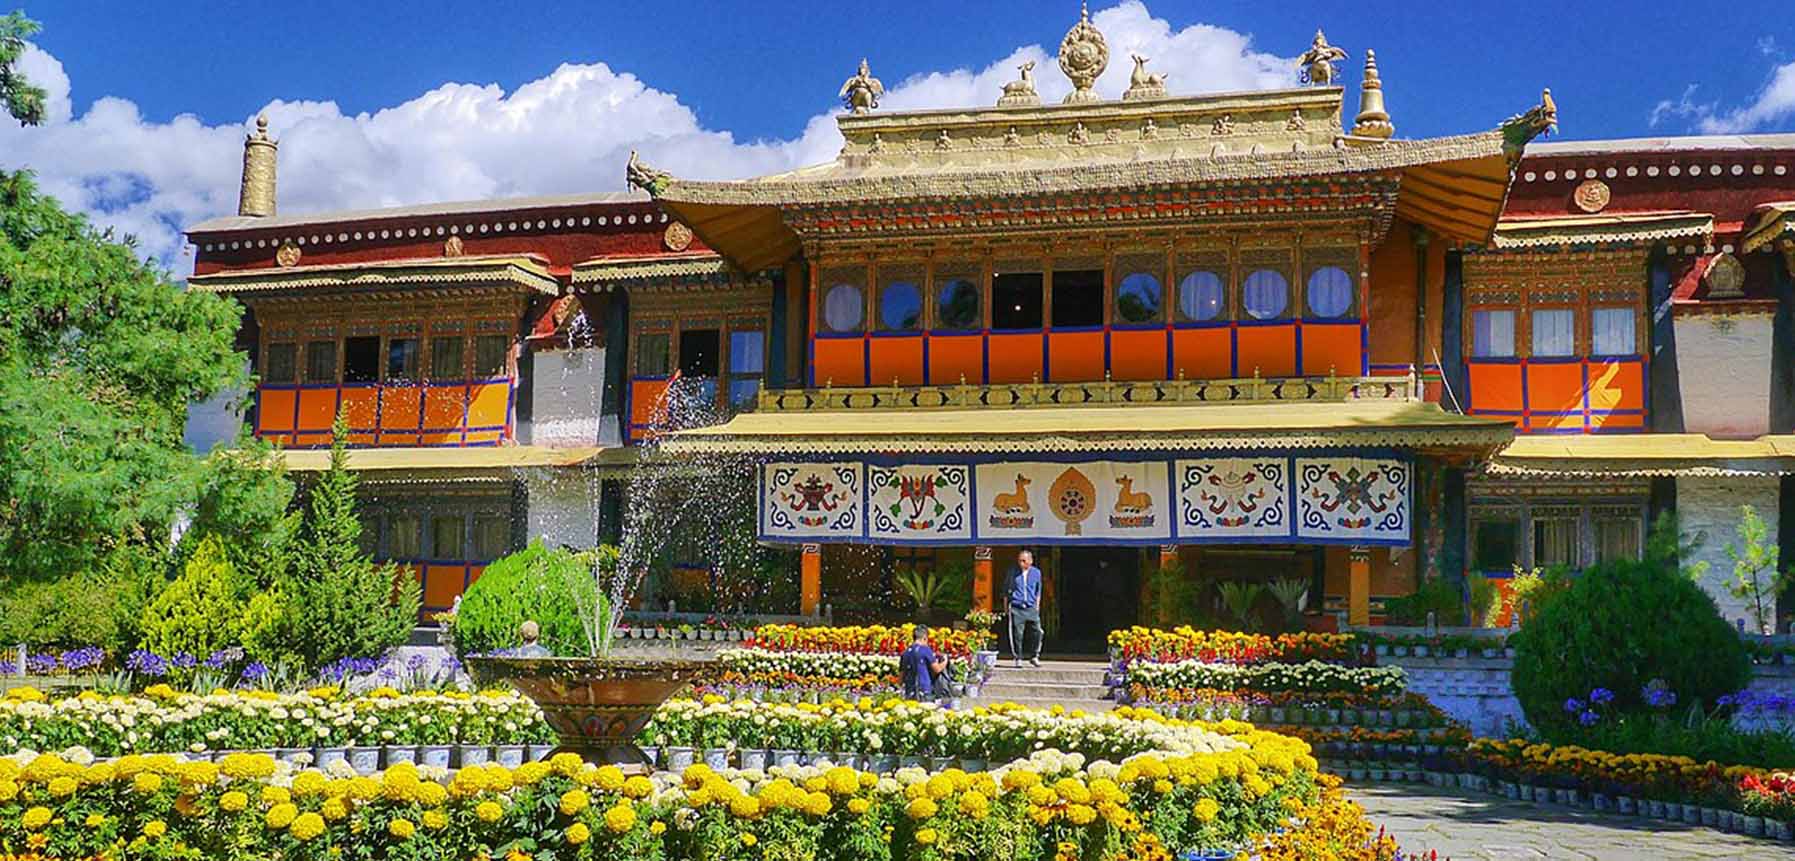 Norbulingka Institute: Preserving Tibetan Art and Culture